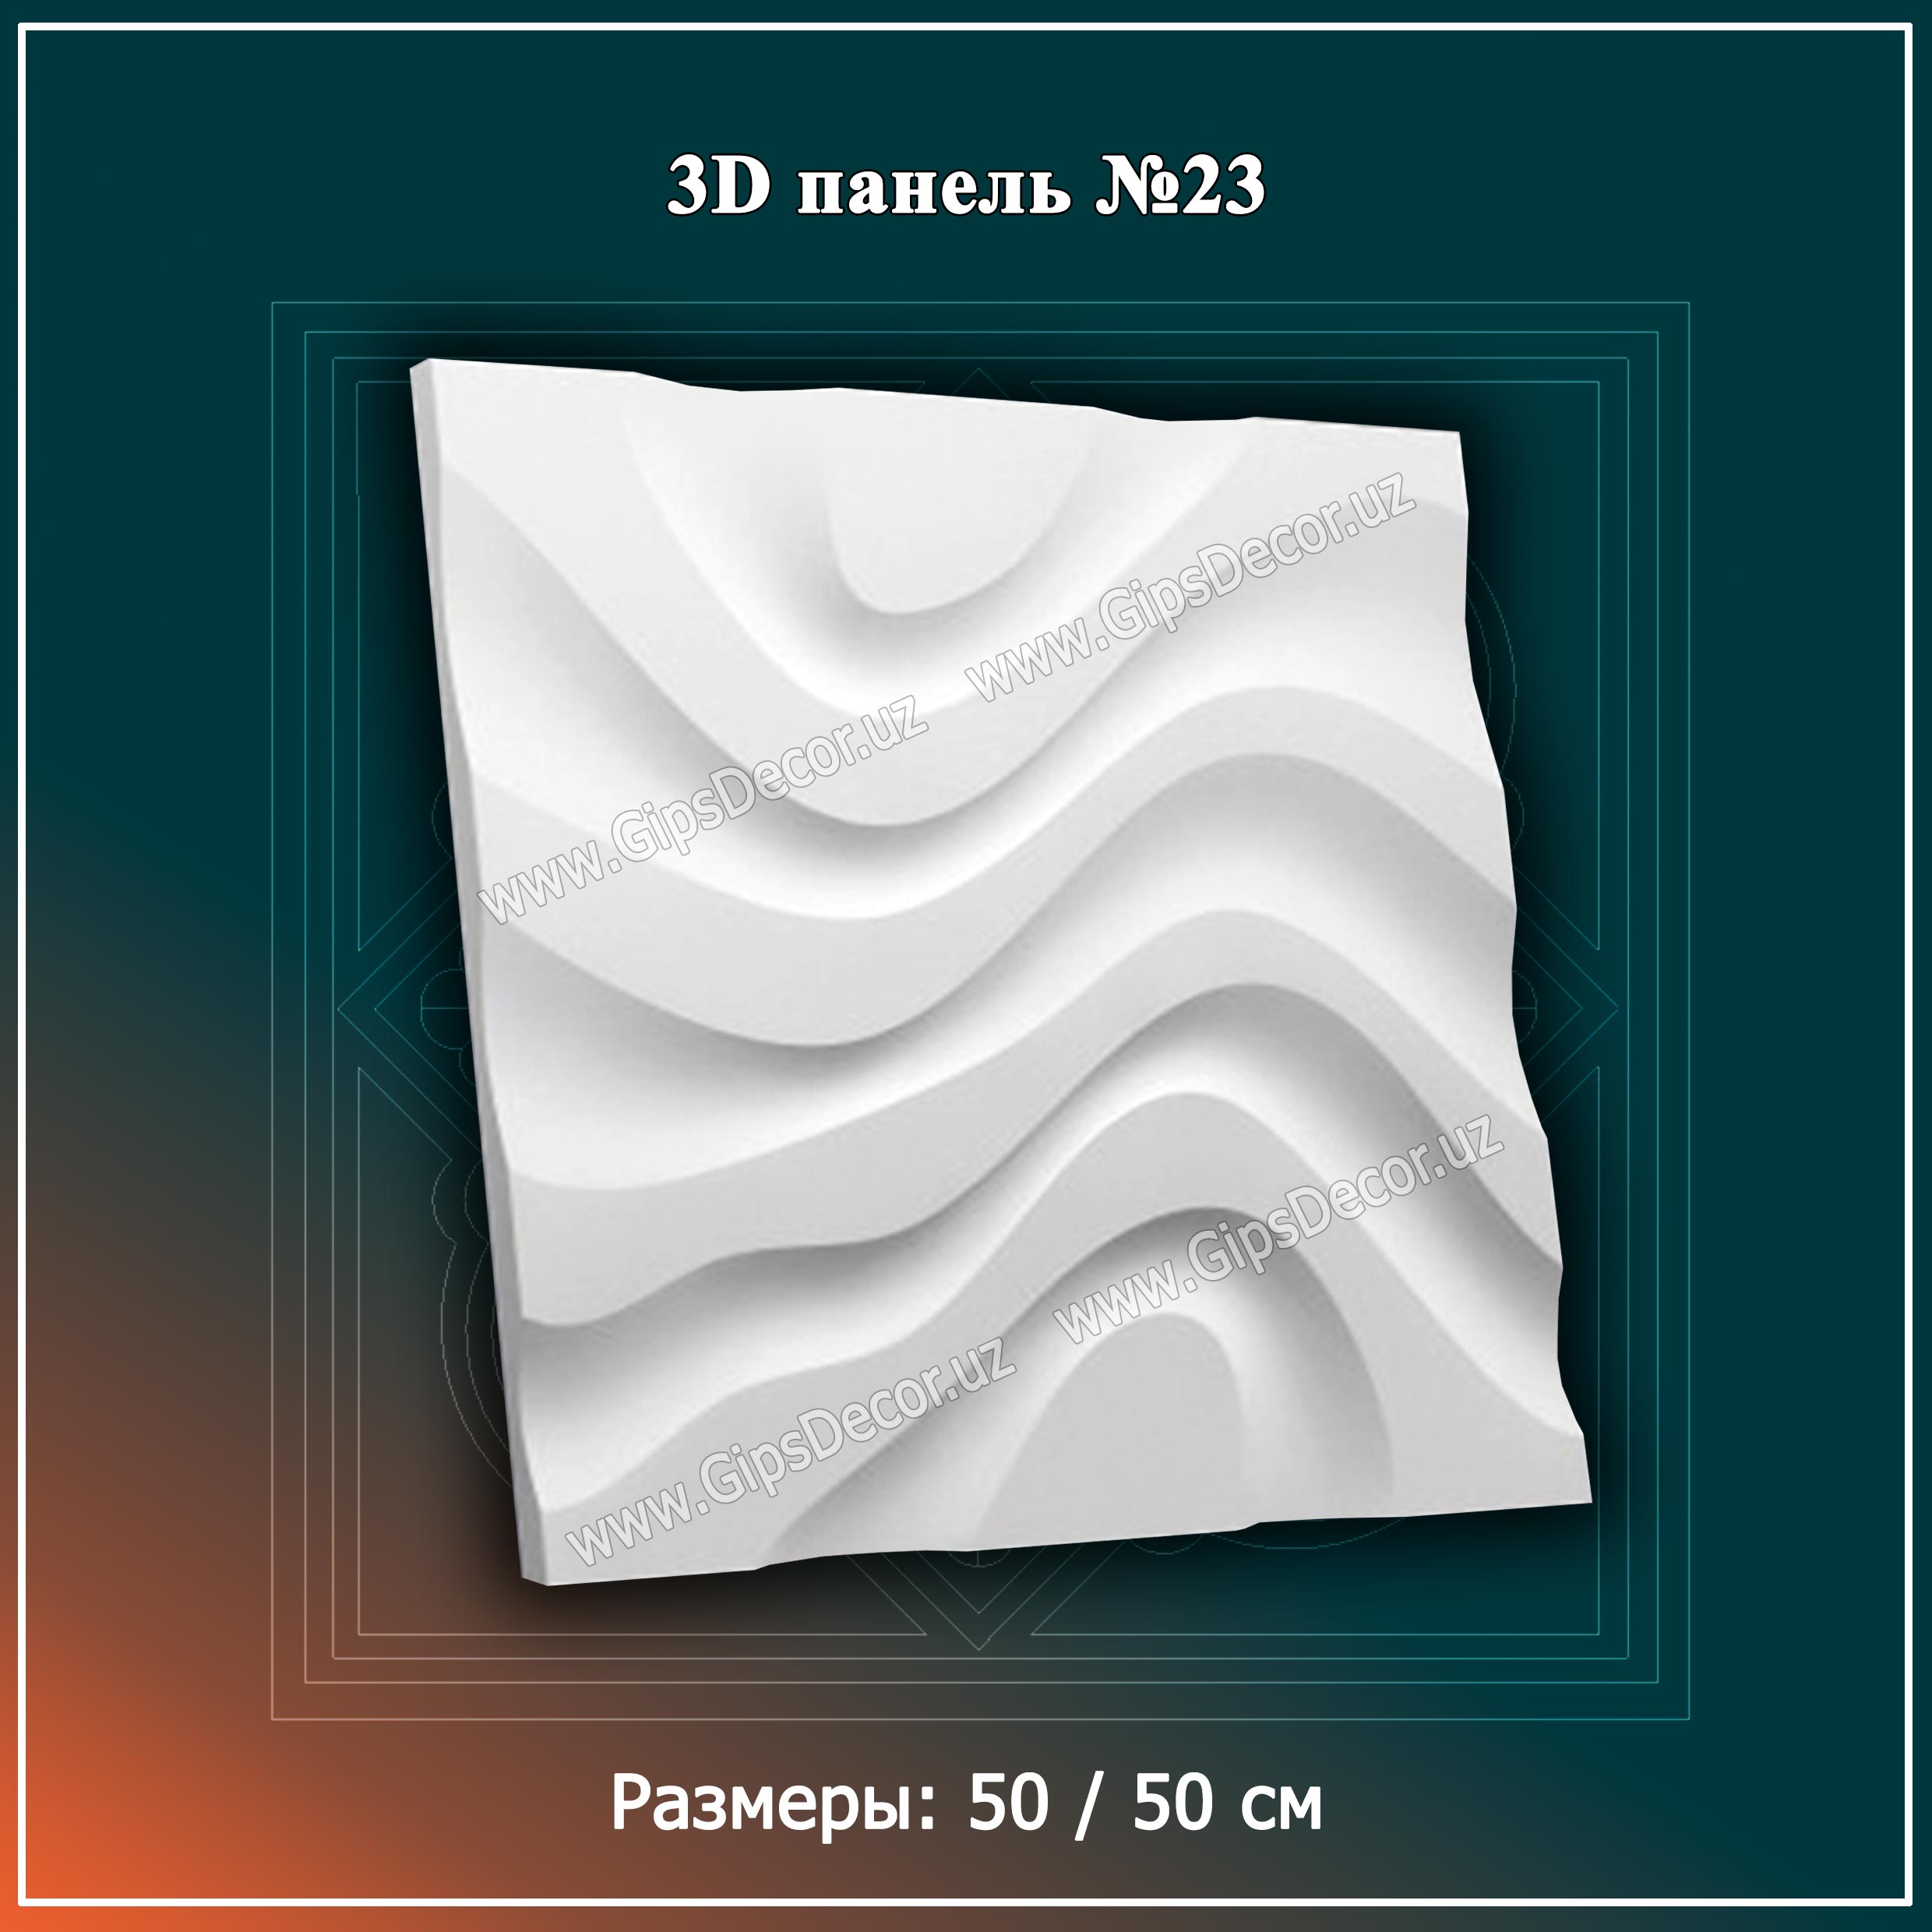 3D панель №23